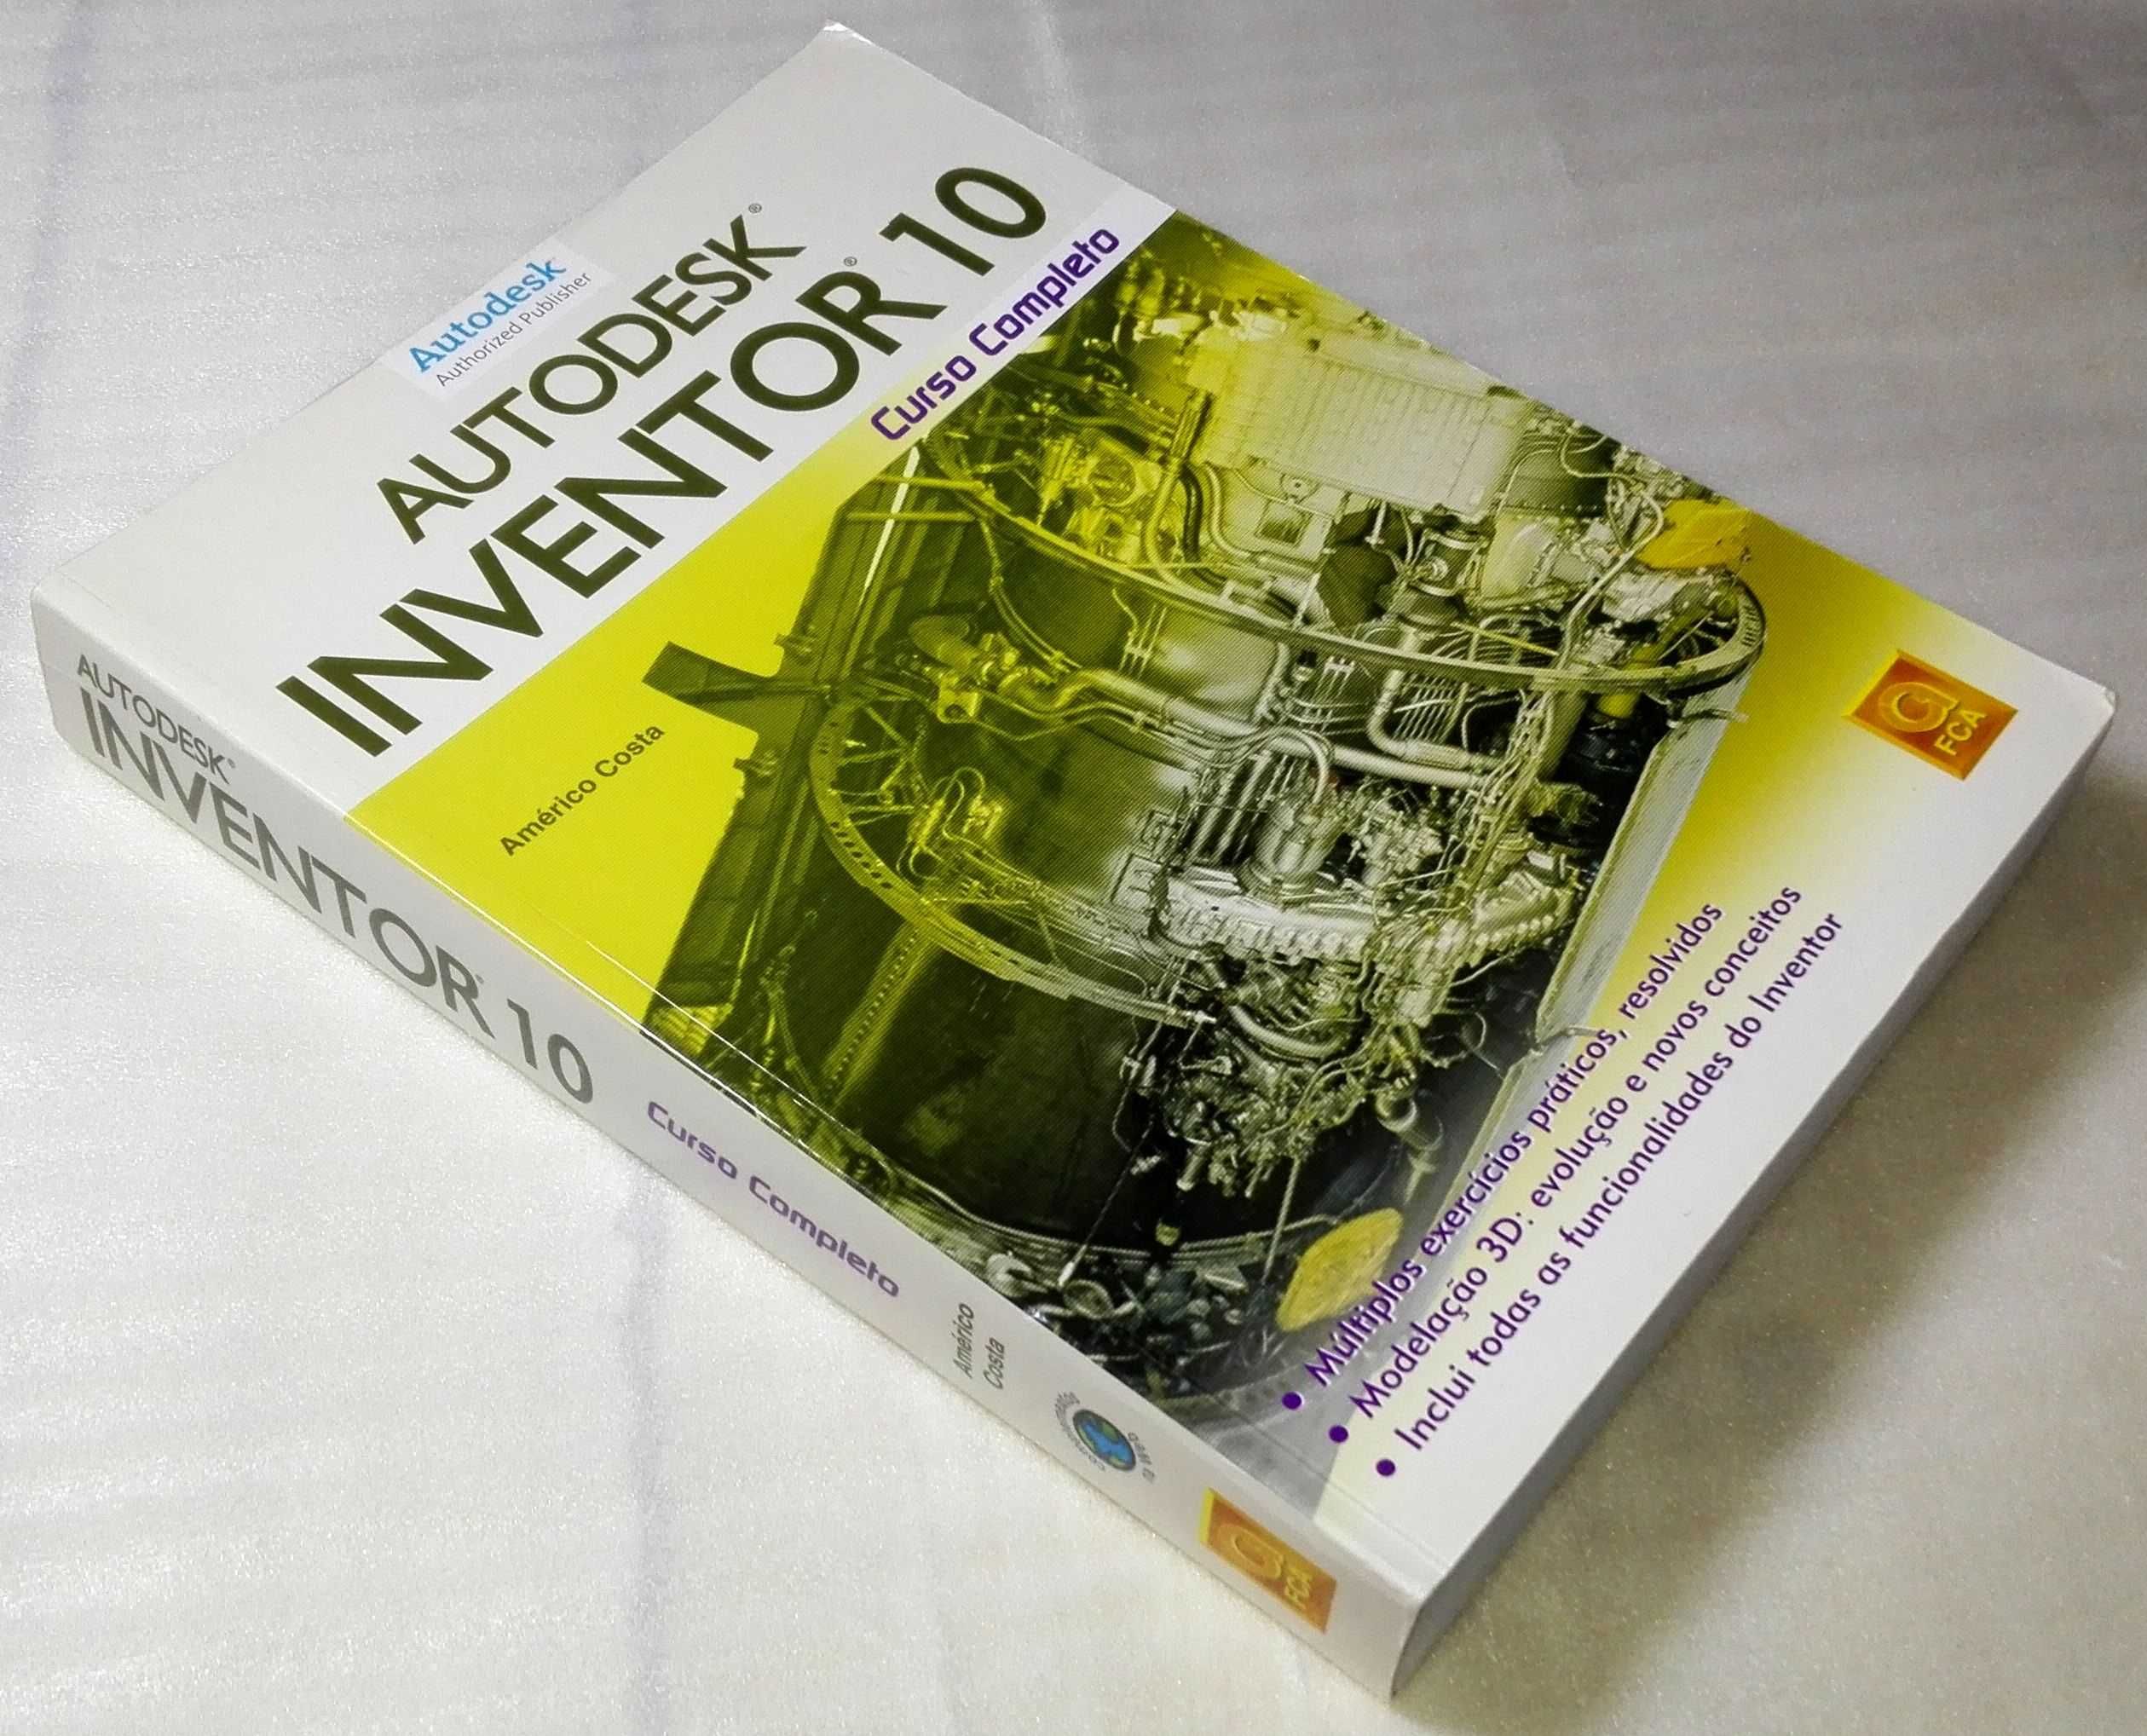 Livro Autodesk Inventor 10 - Curso Completo